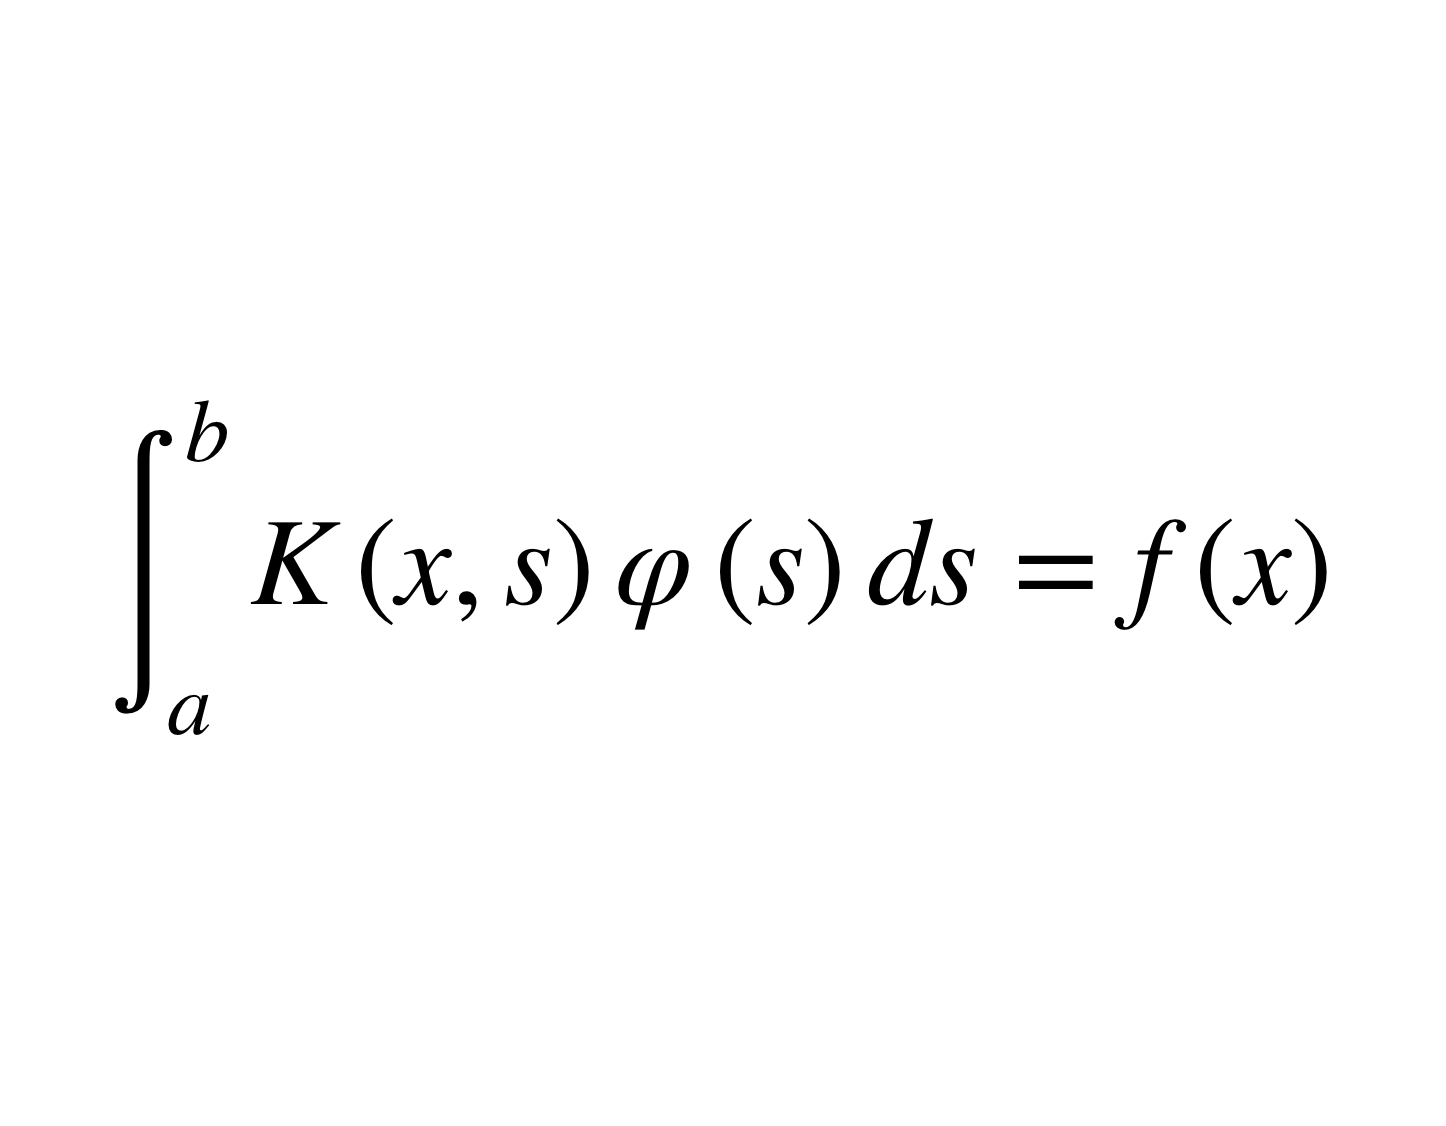 弗雷德霍姆積分方程